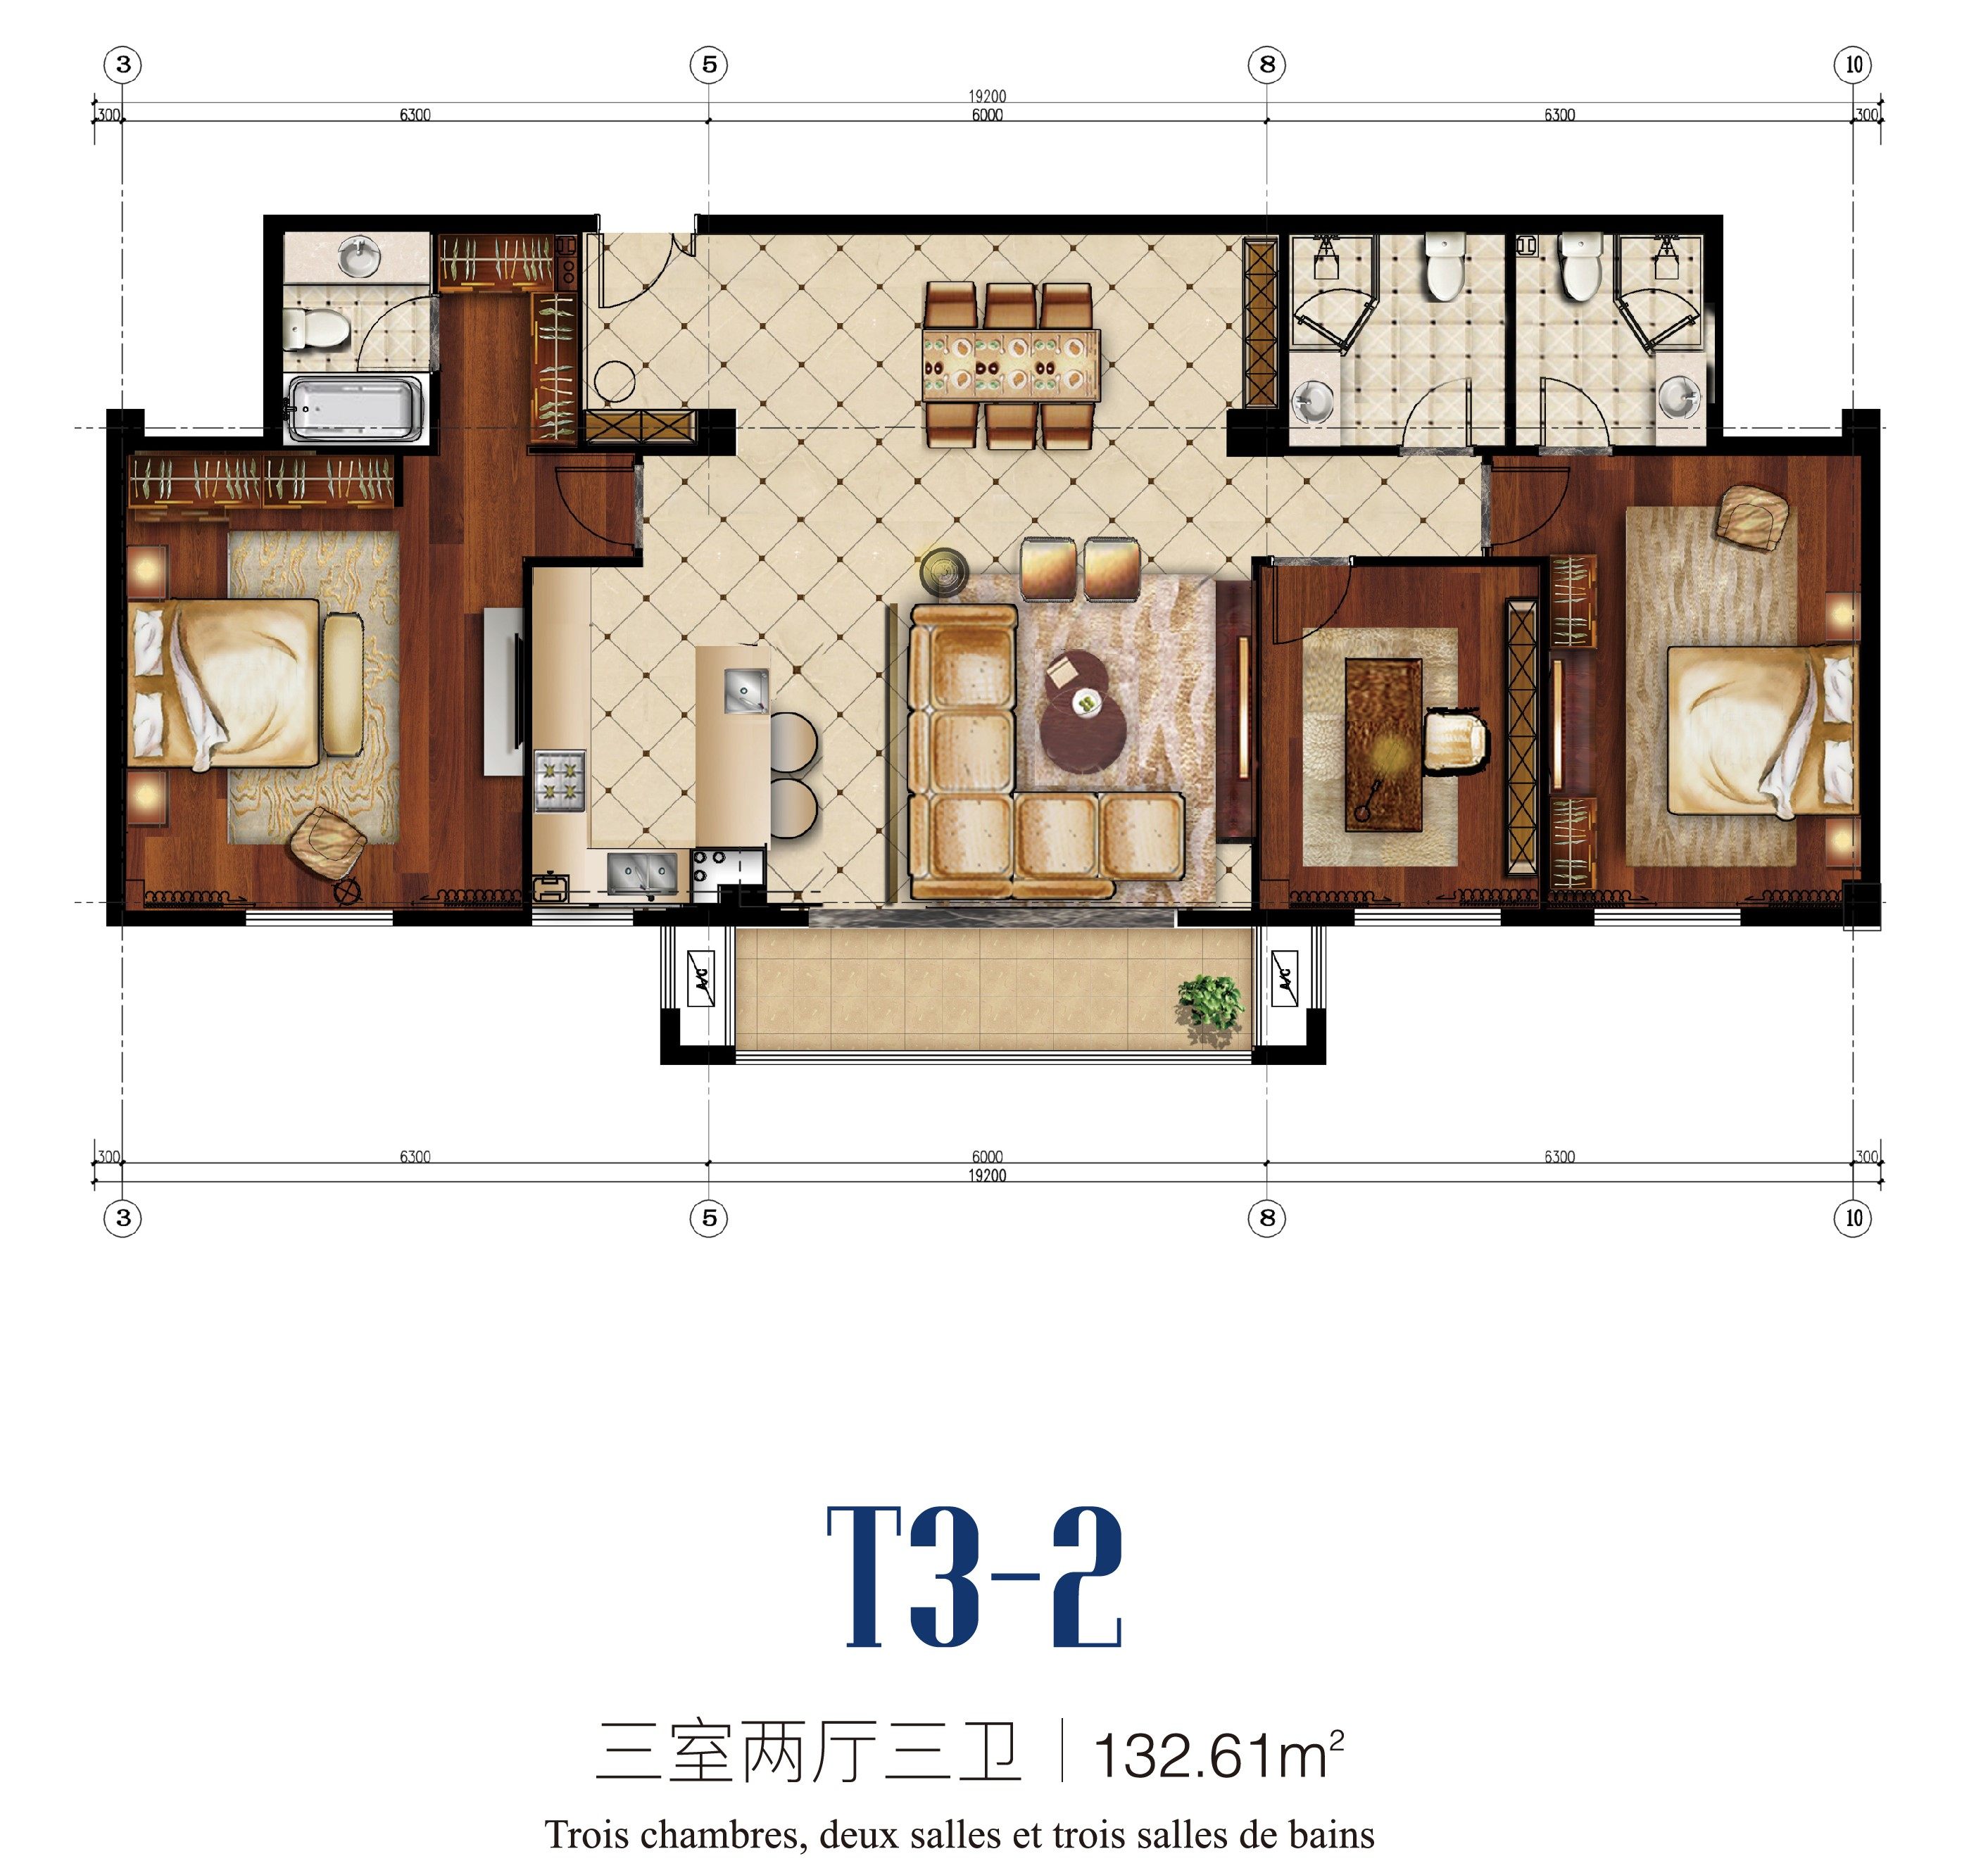 T3-2 Apartments